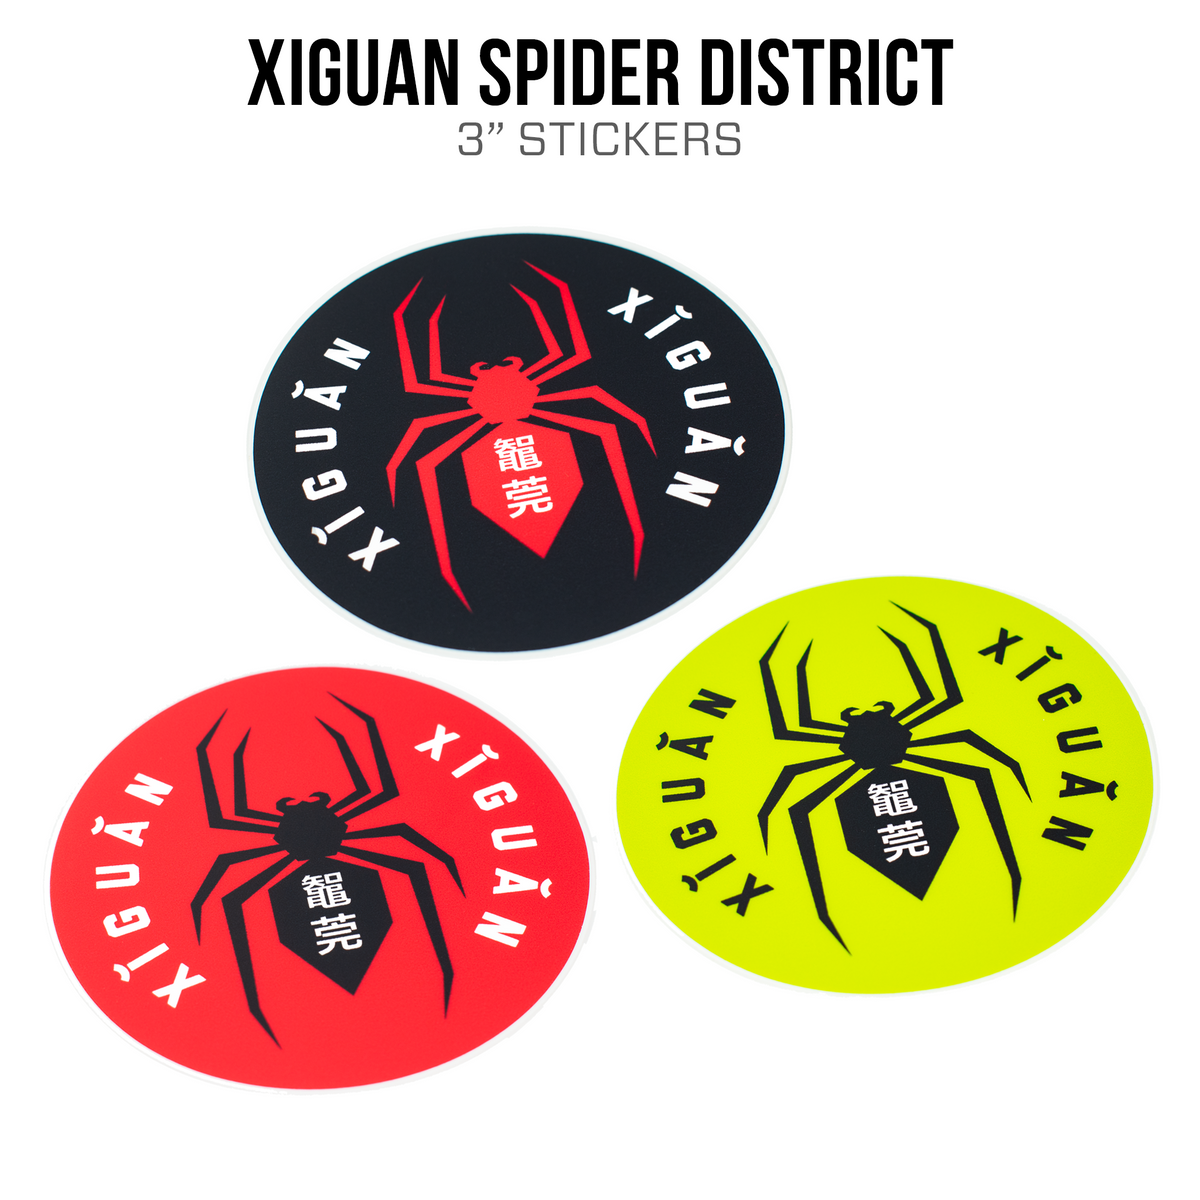 Pegatinas del distrito de arañas de Xiguan